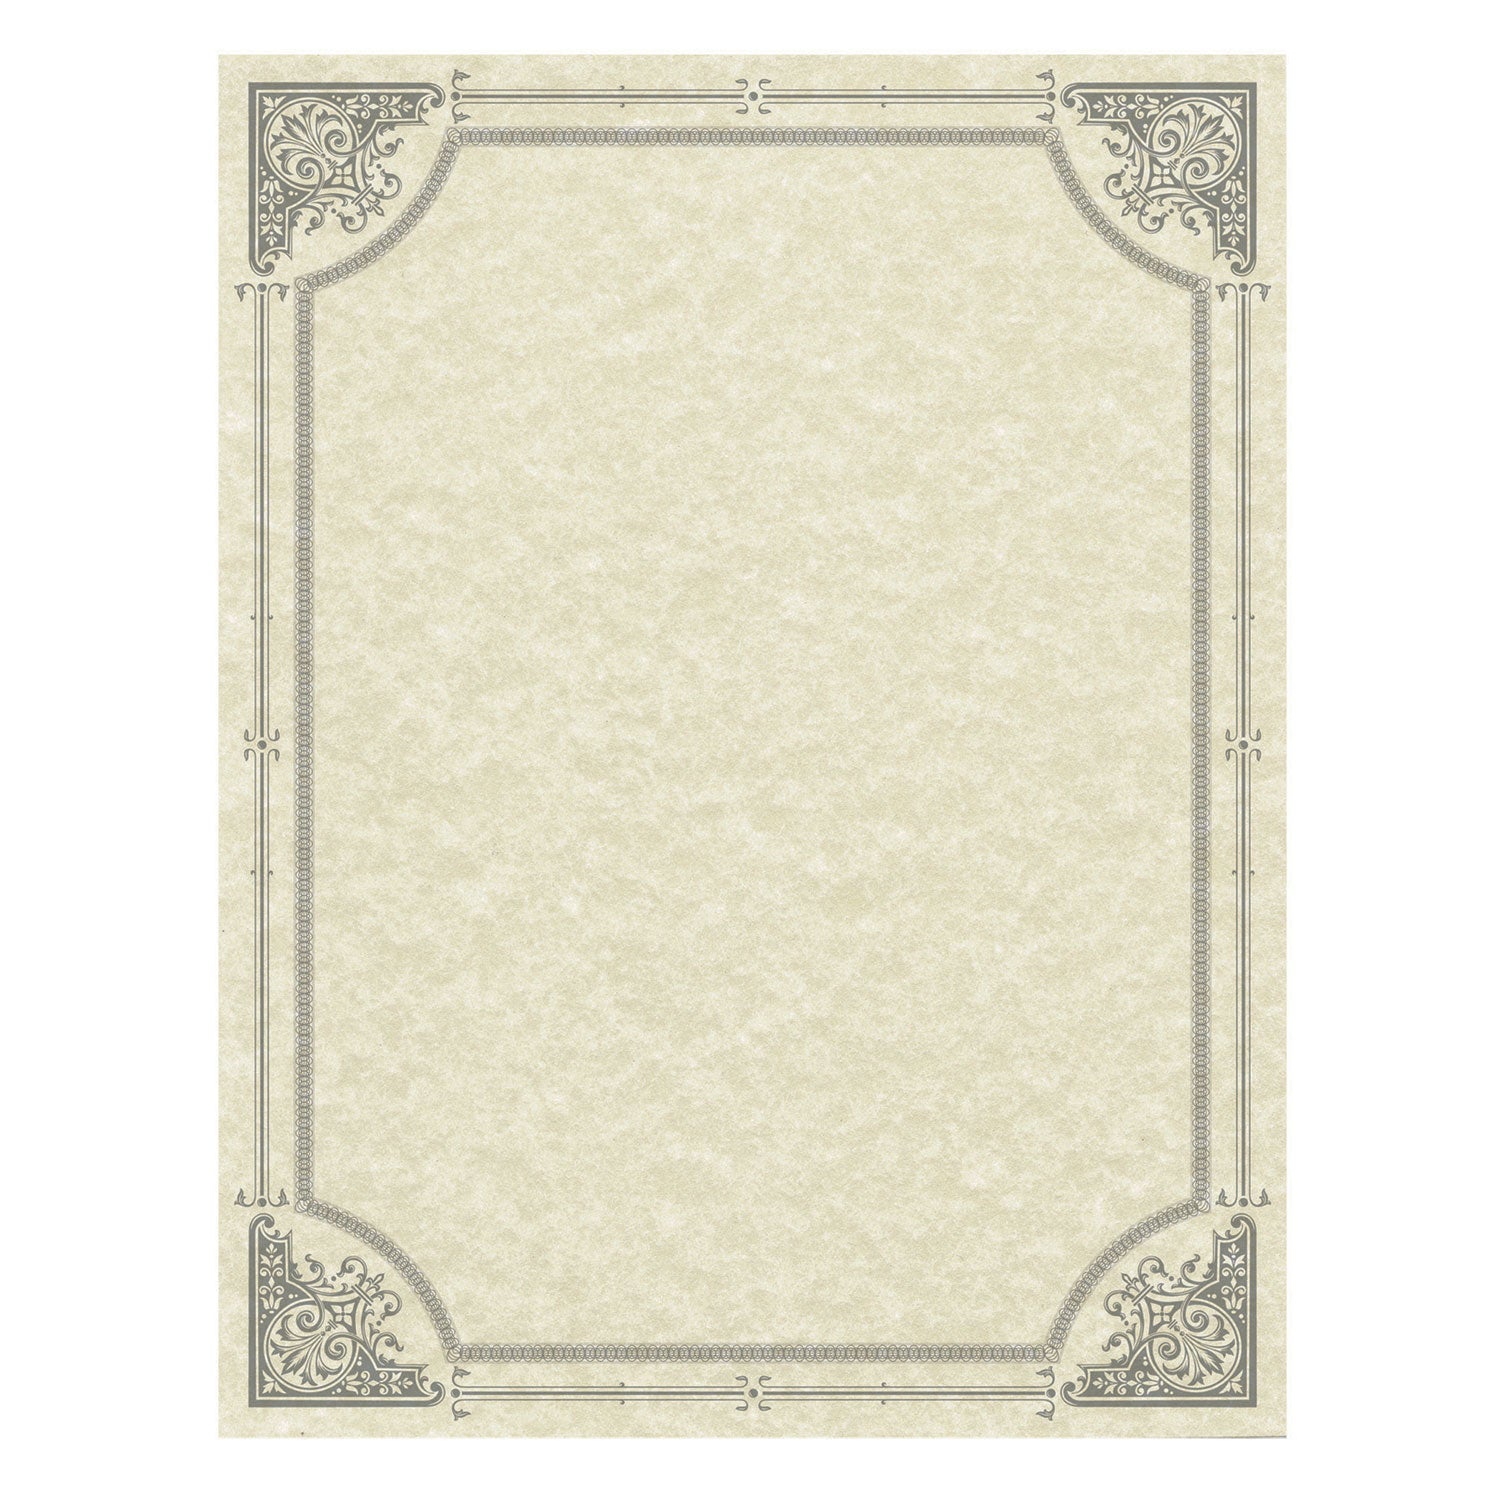 parchment-certificates-vintage-85-x-11-ivory-with-silver-foil-border-50-pack_sou91360 - 1